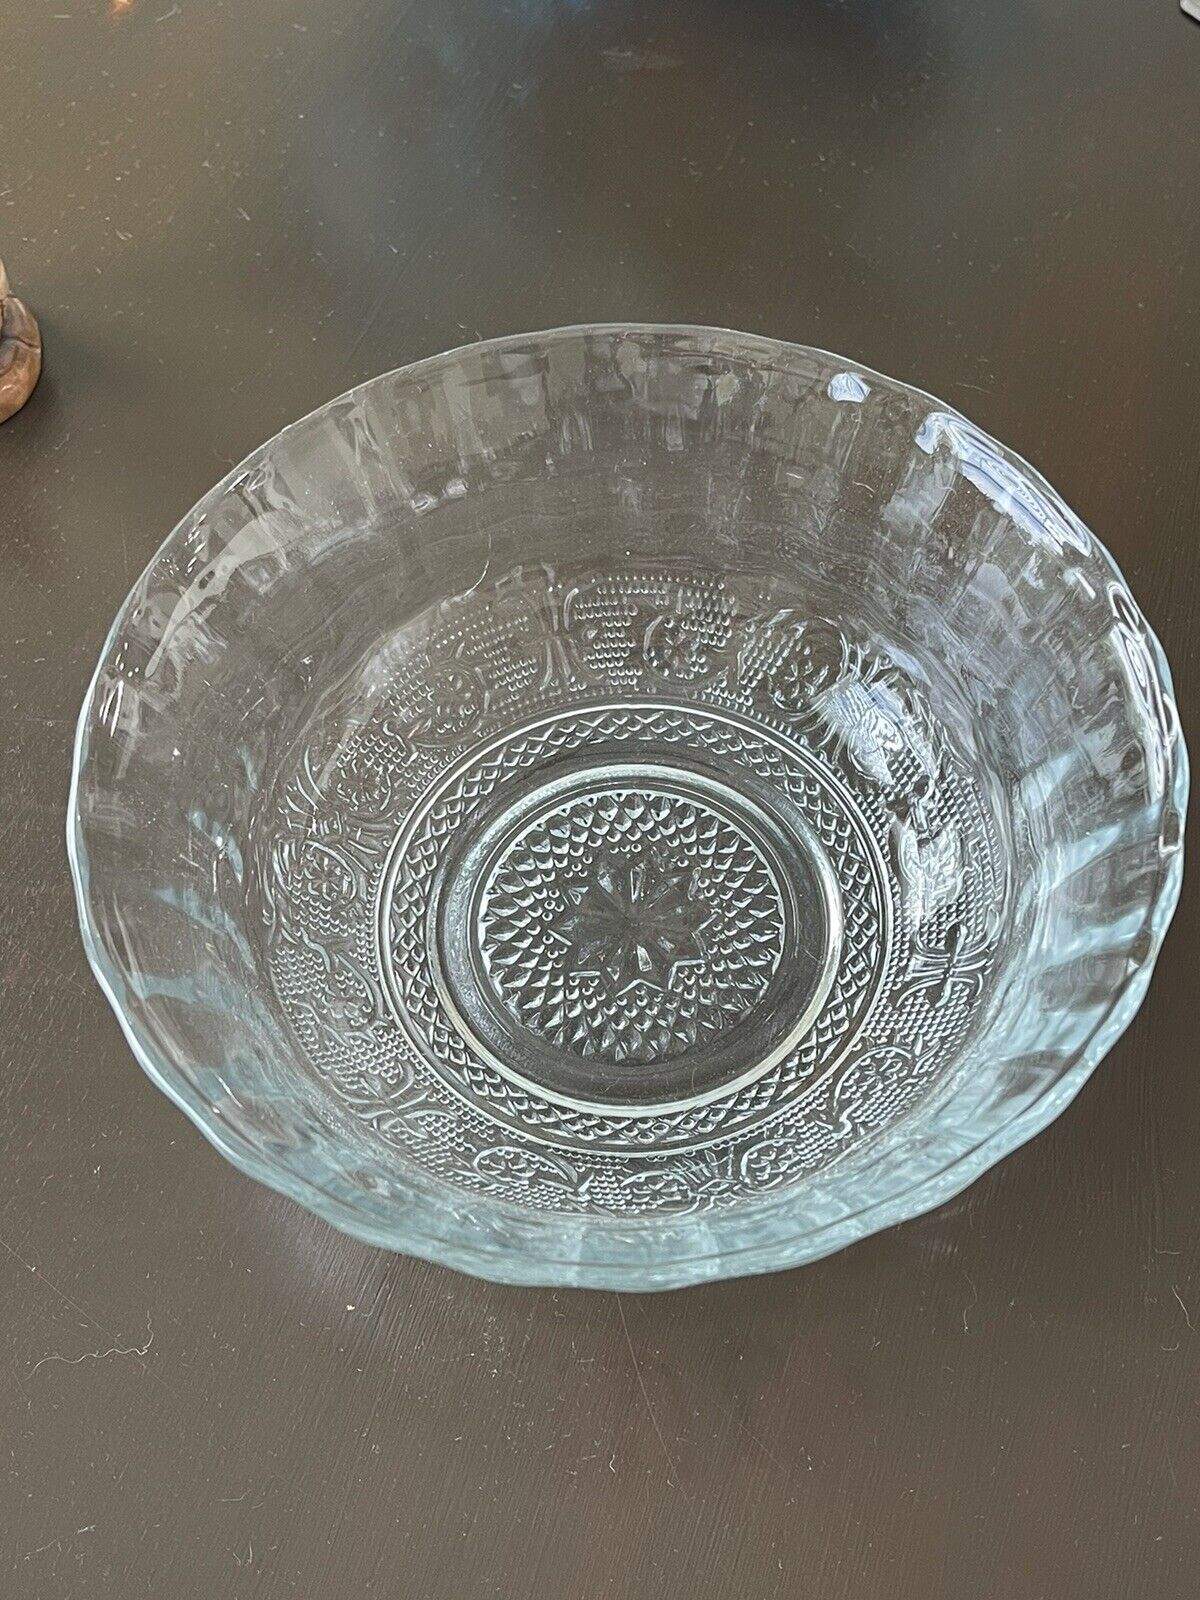 Vintage Crystal Serving Bowl